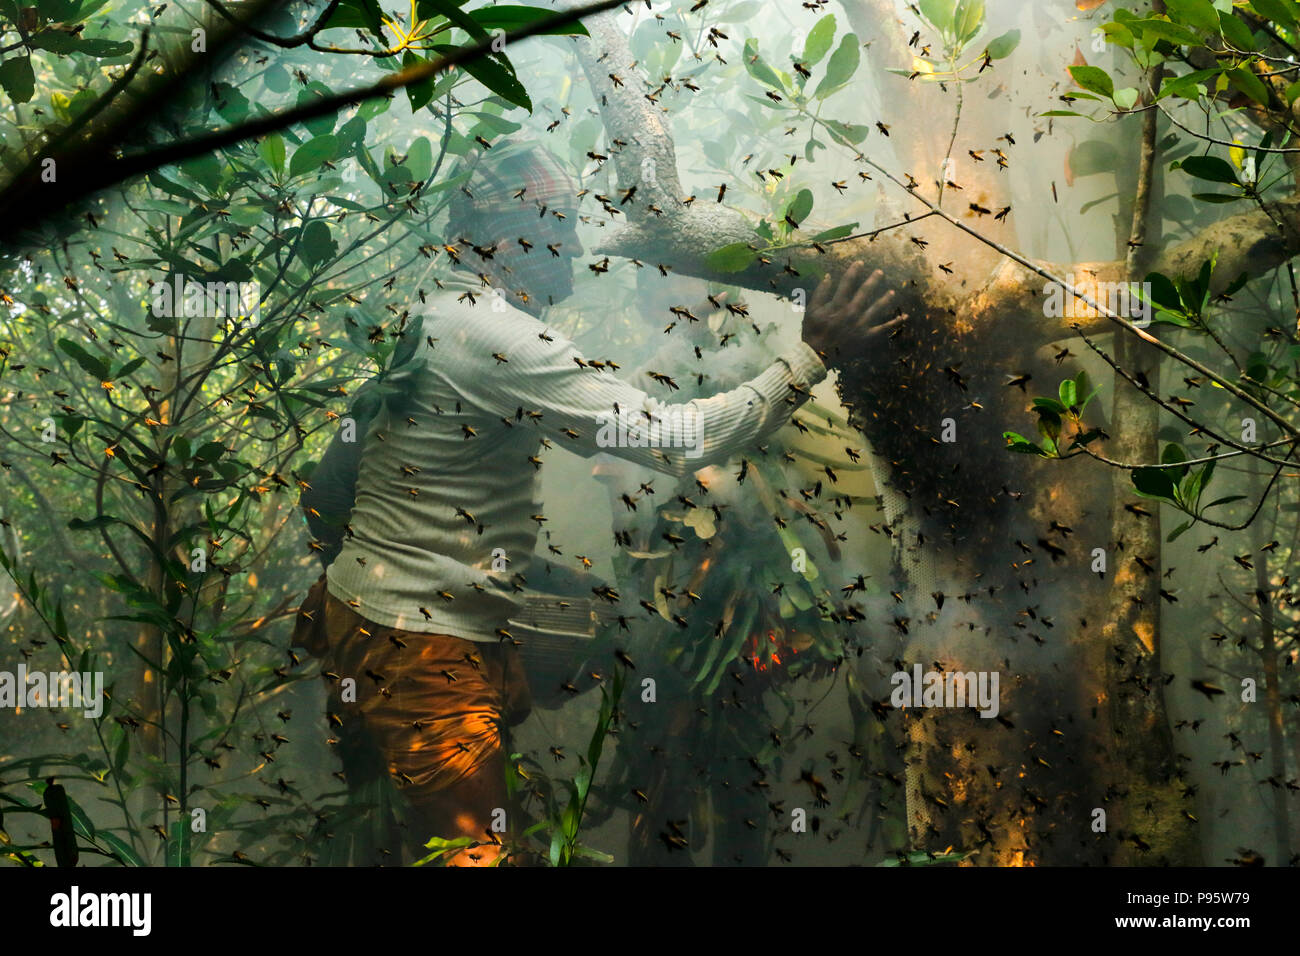 La tradizionale produzione di miele la raccolta in Sundarbans, il mondo la più grande foresta di mangrovie in Bangladesh. Satkhira, Bangladesh. Foto Stock